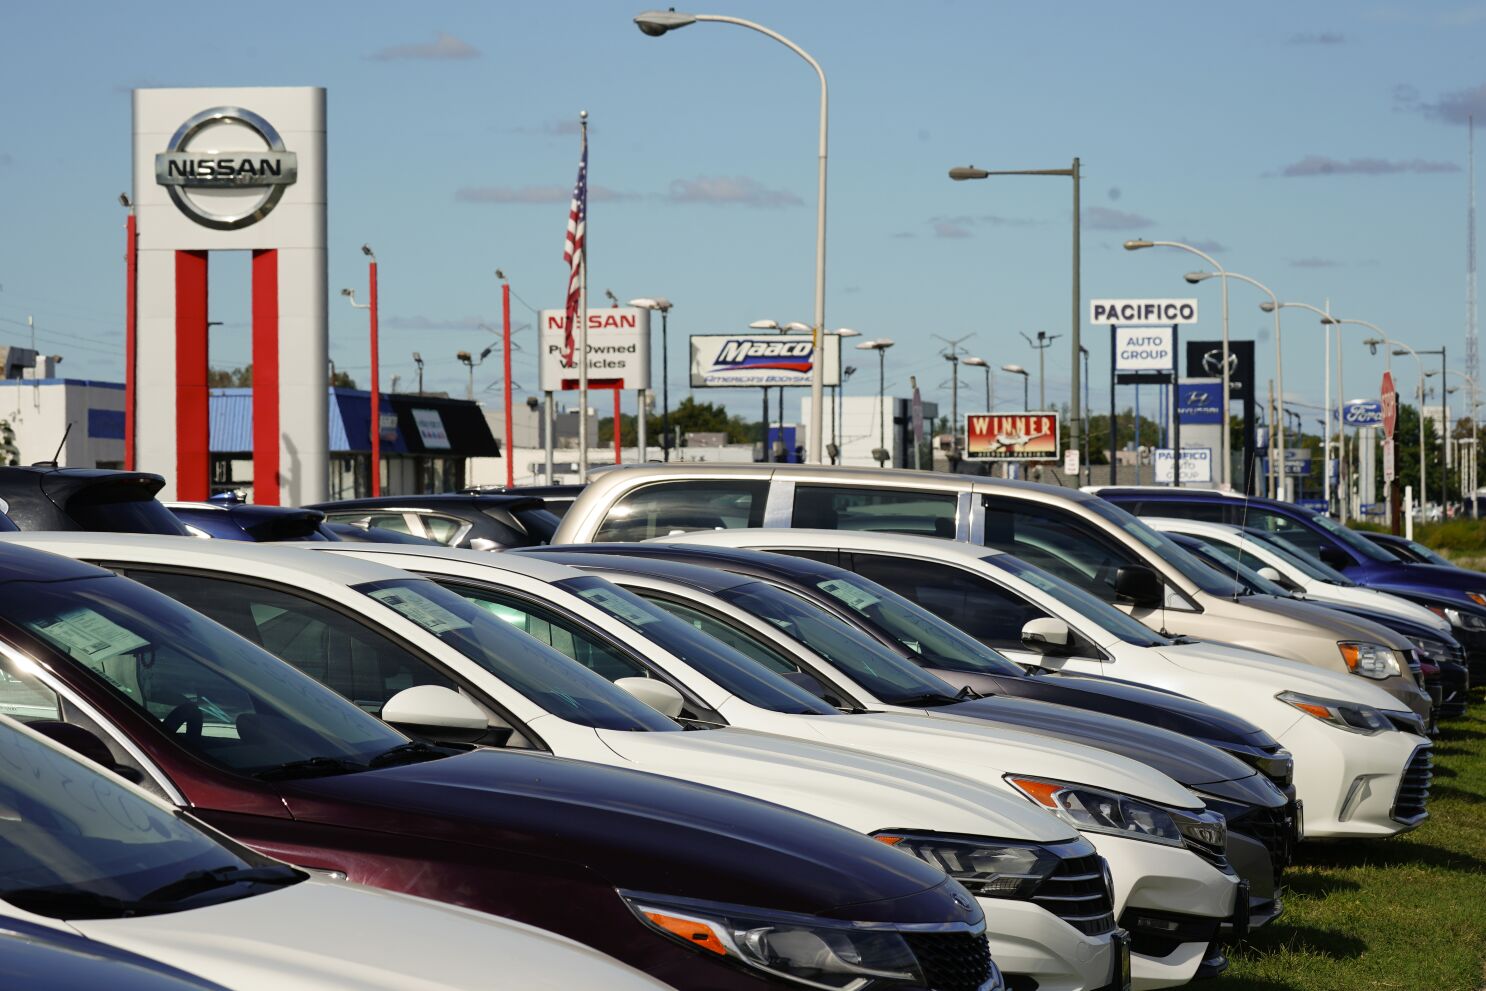 EEUU: Precios de autos finalmente empiezan a bajar - Los Angeles Times